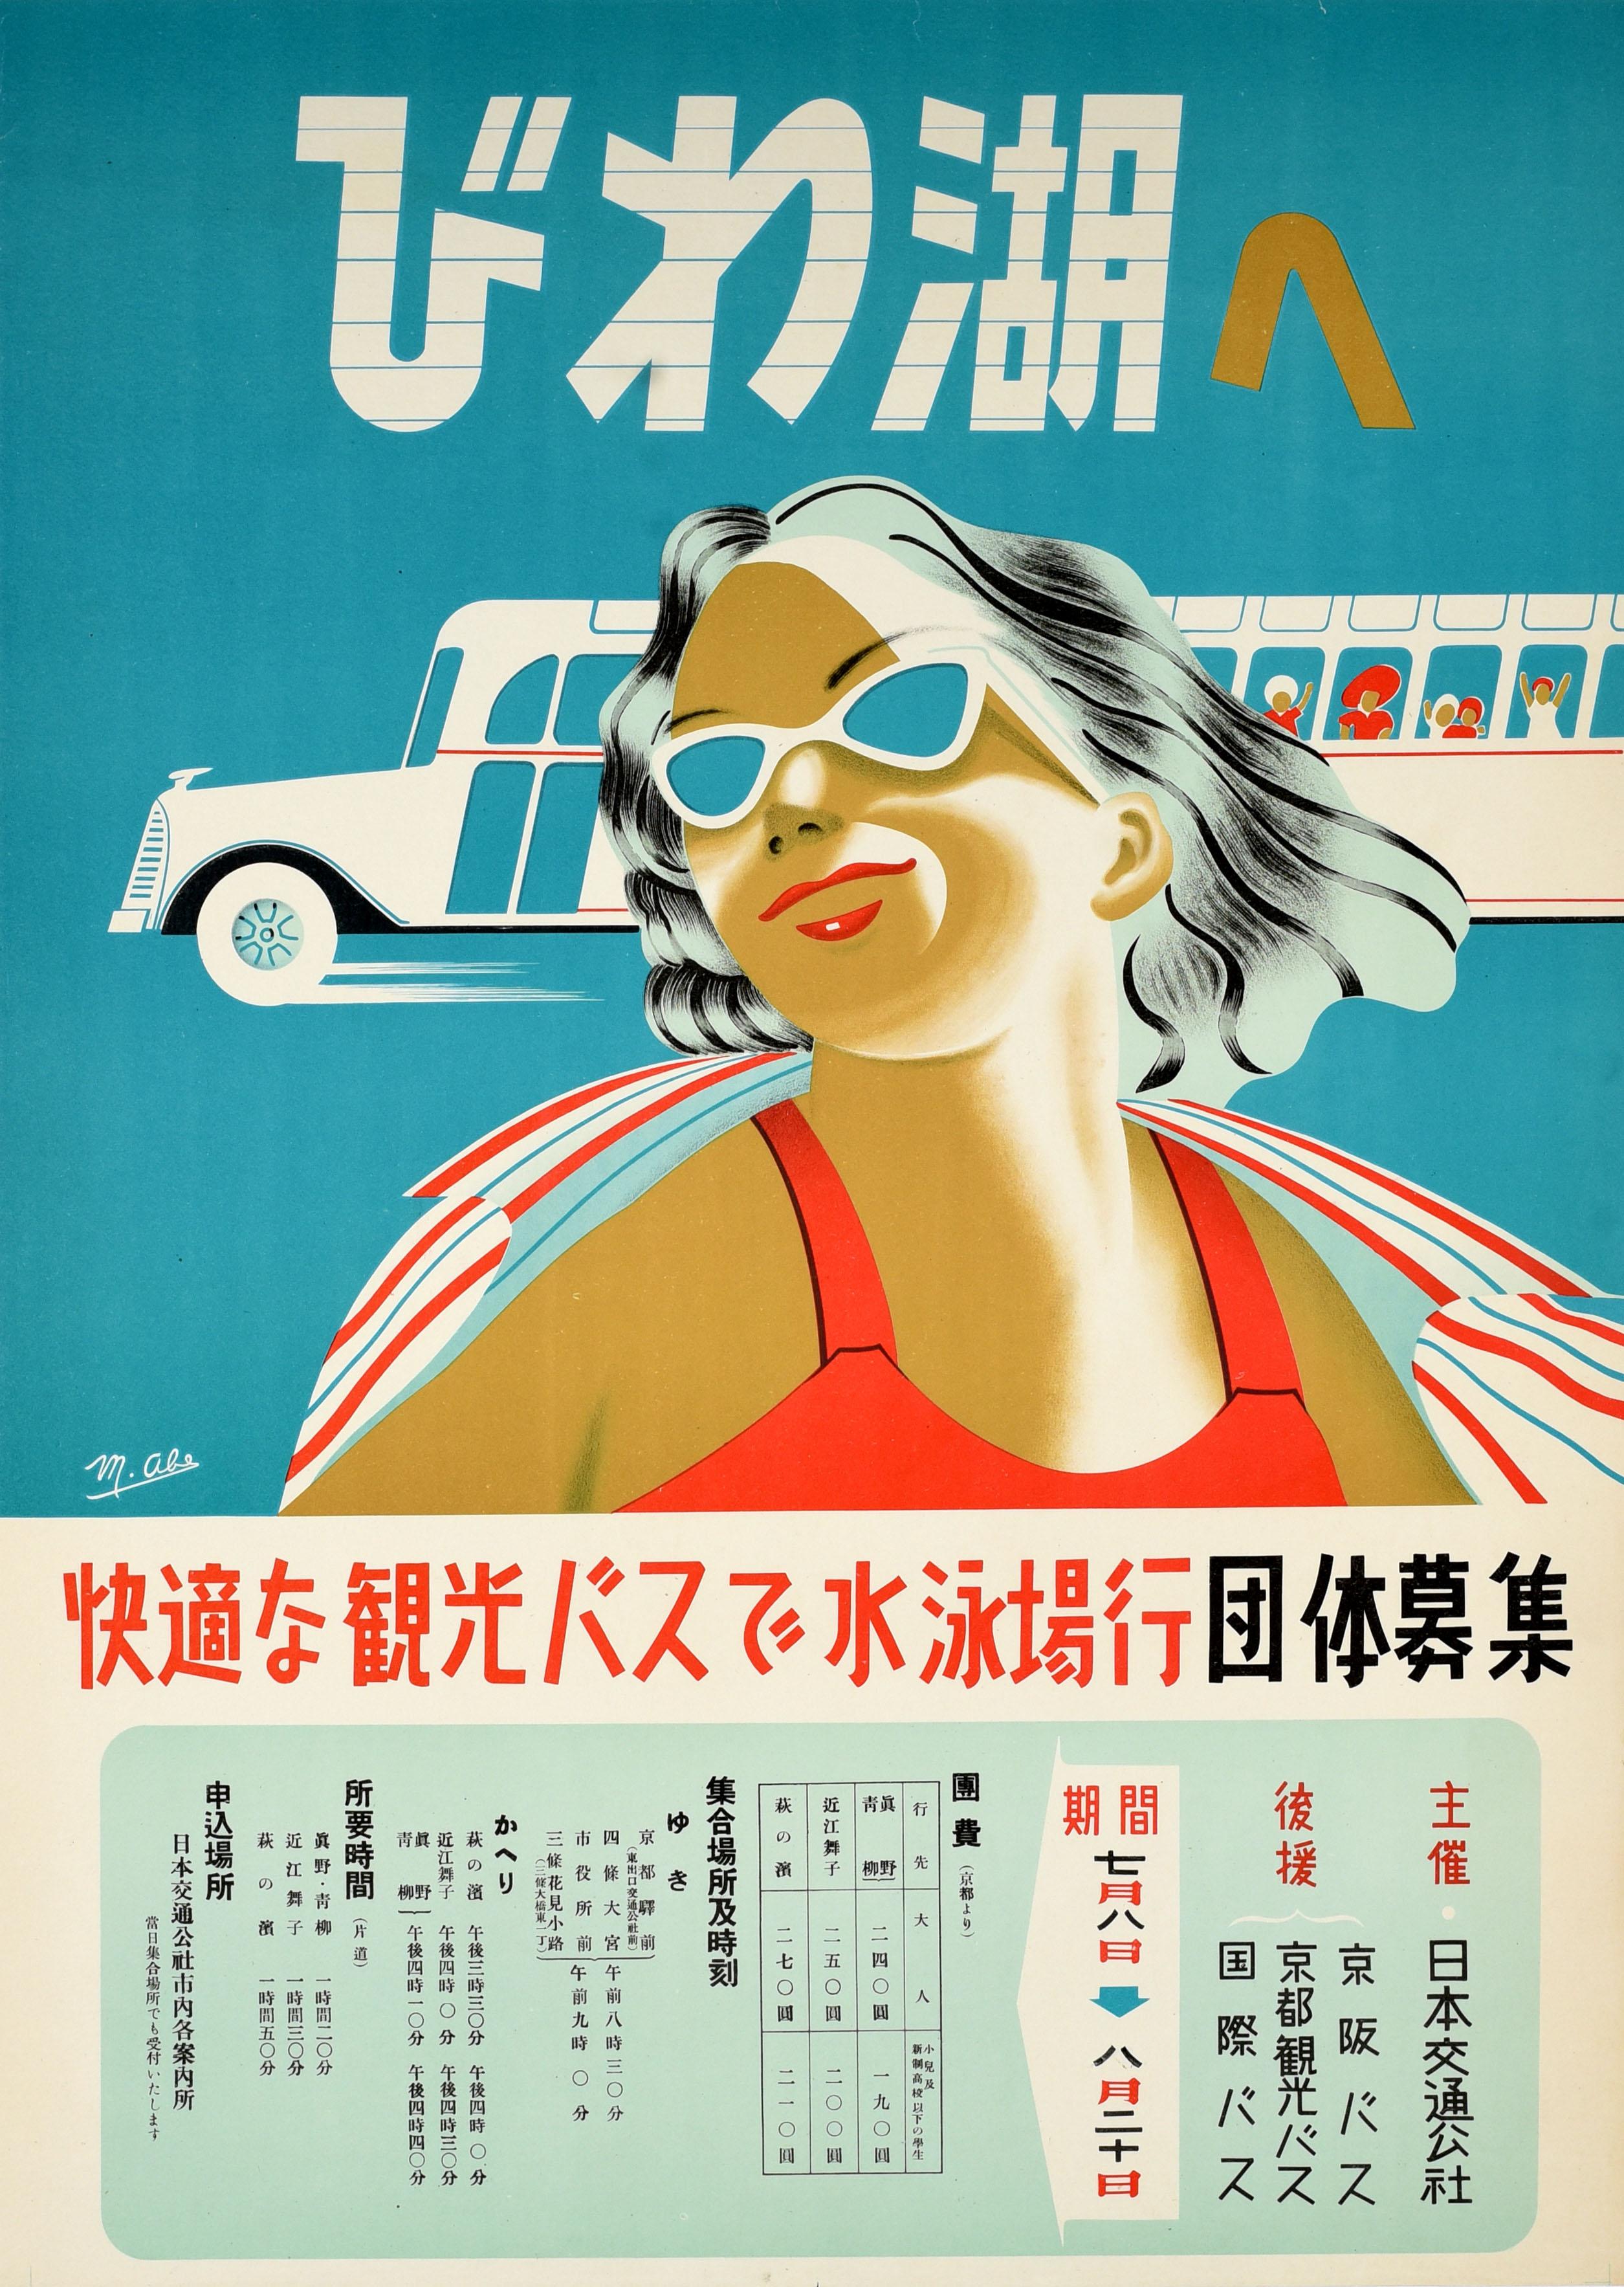 Unknown Print - Original Vintage Asia Travel Poster Lake Biwa Japan Bus Tour Nippon Midcentury